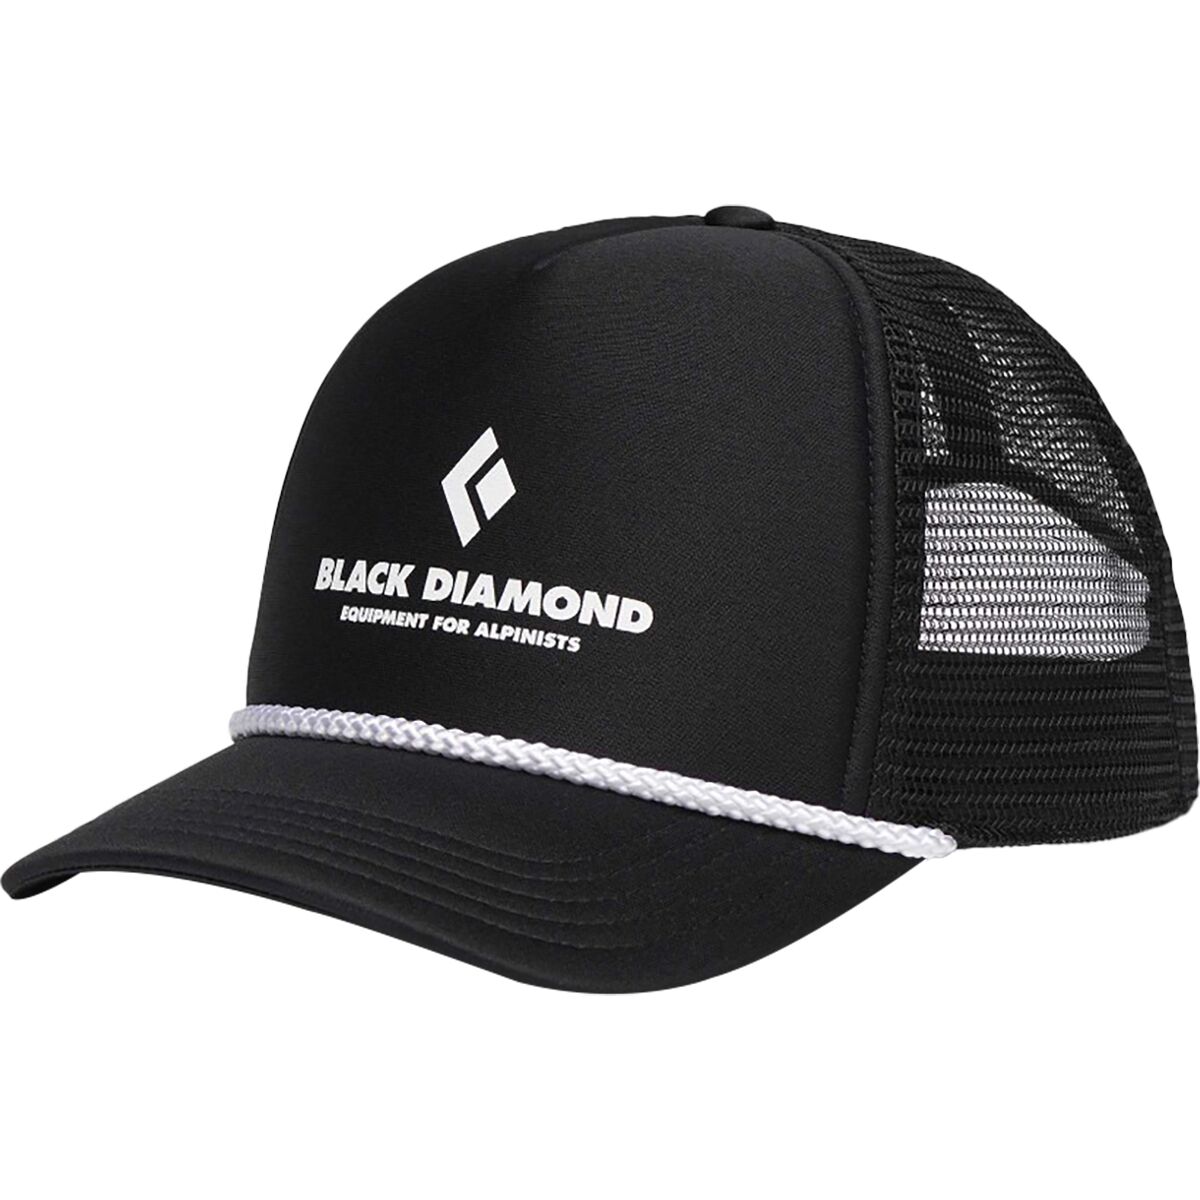 Кепка дальнобойщика с плоским козырьком Black Diamond, цвет black/black eqpmnt for alpnst цена и фото